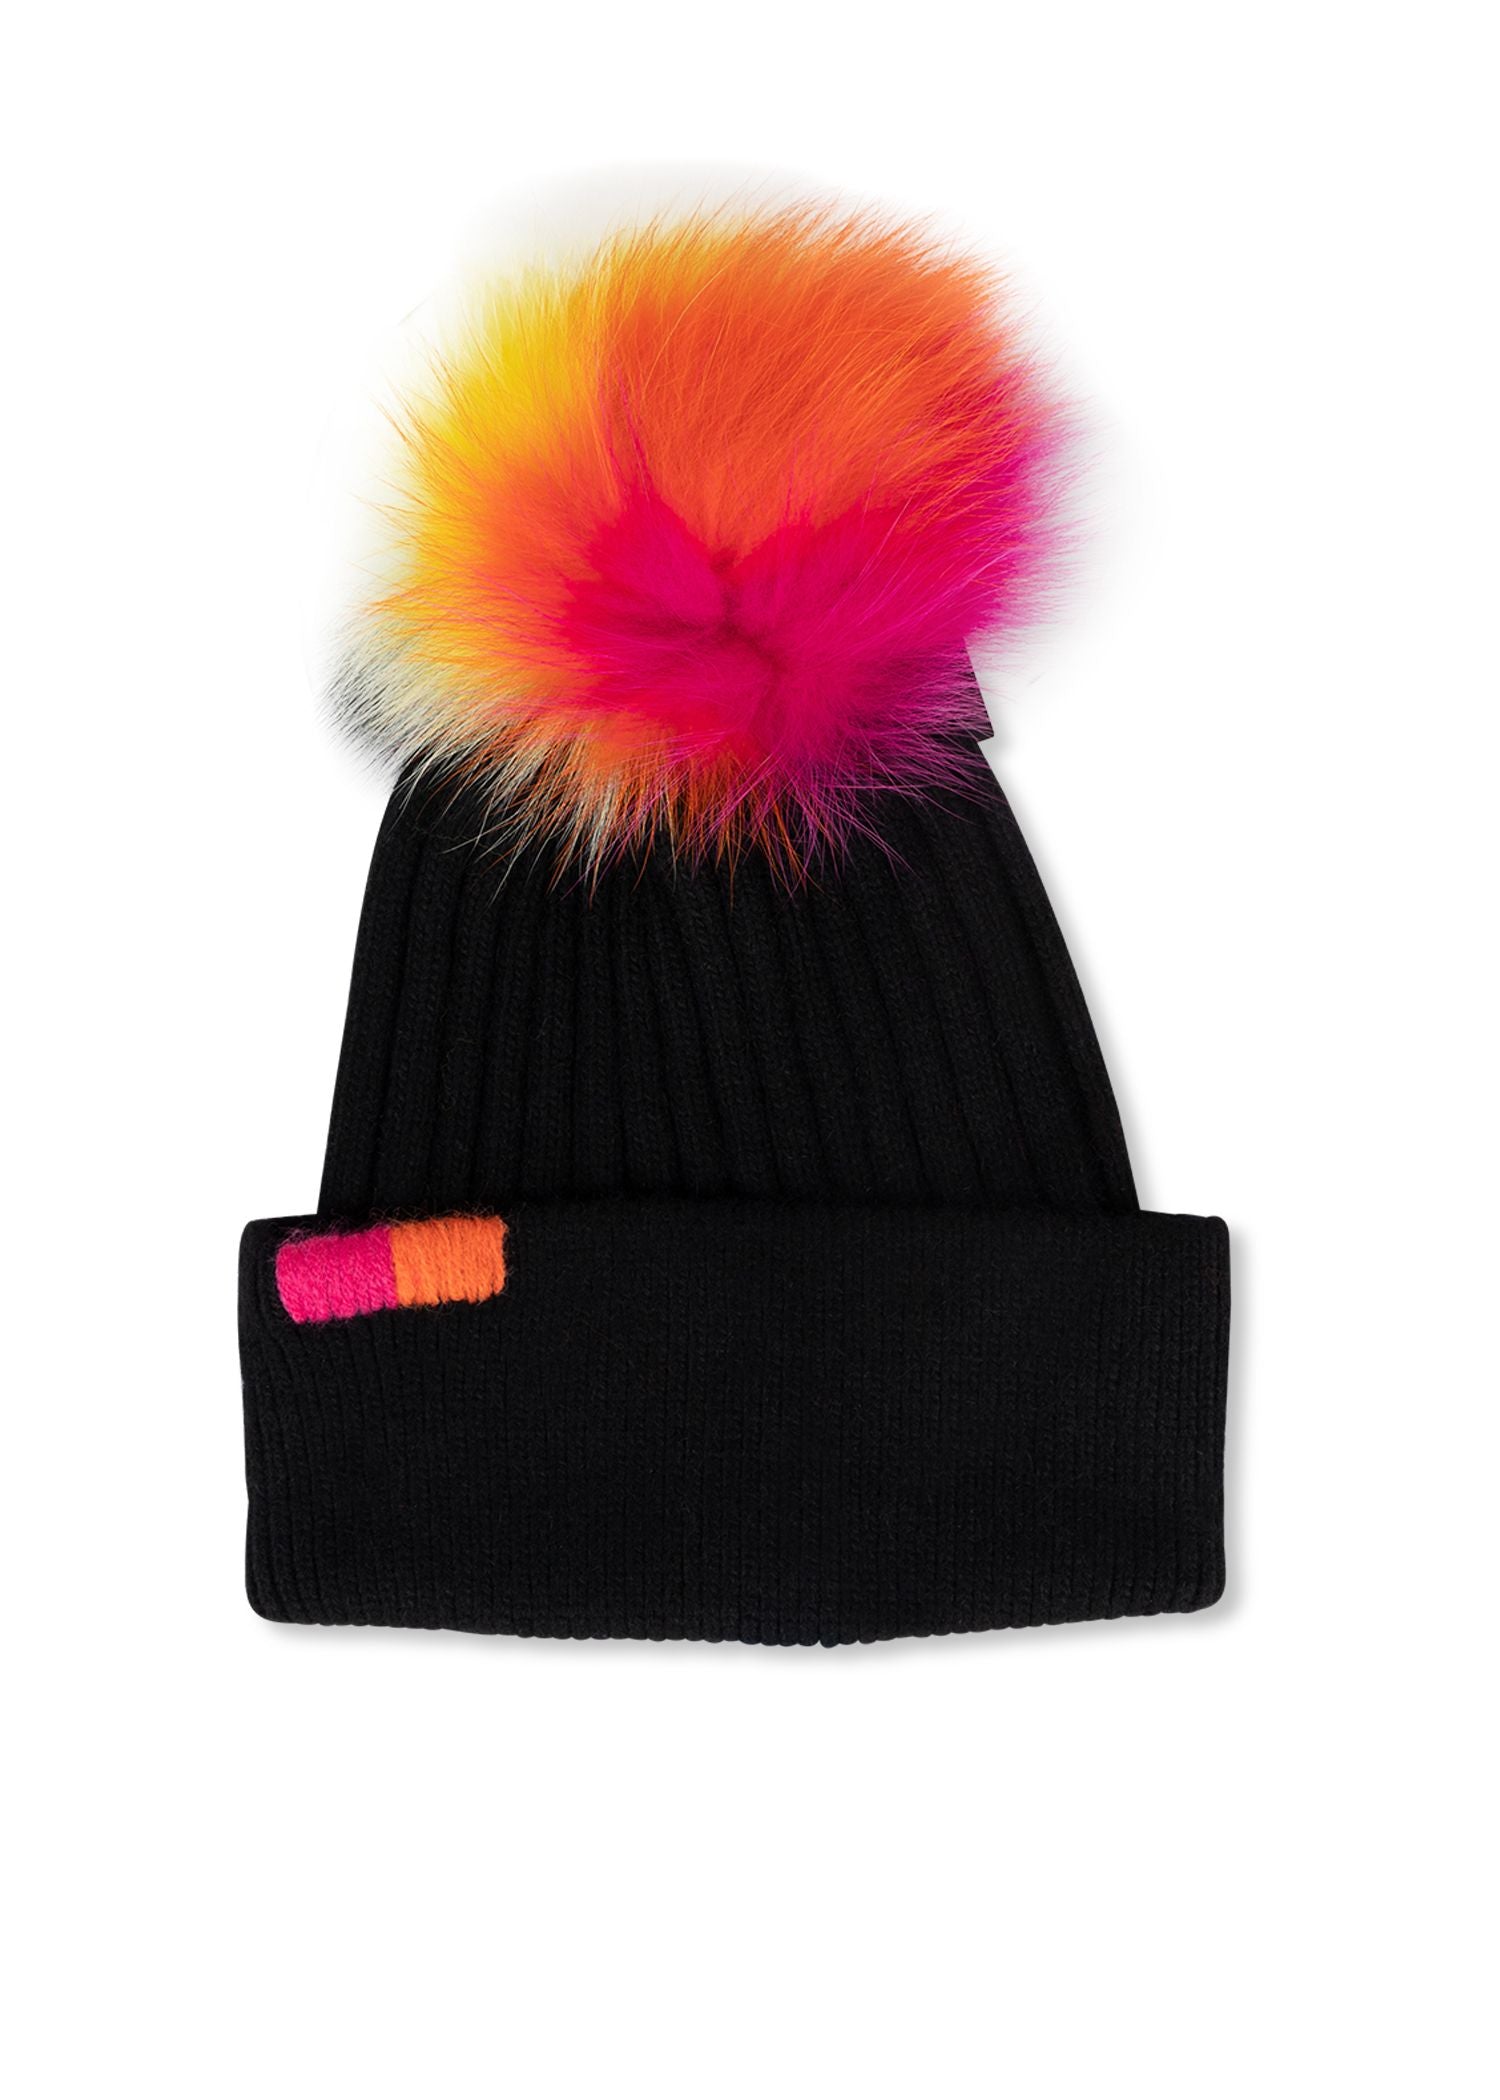 woodstock neon fox hat